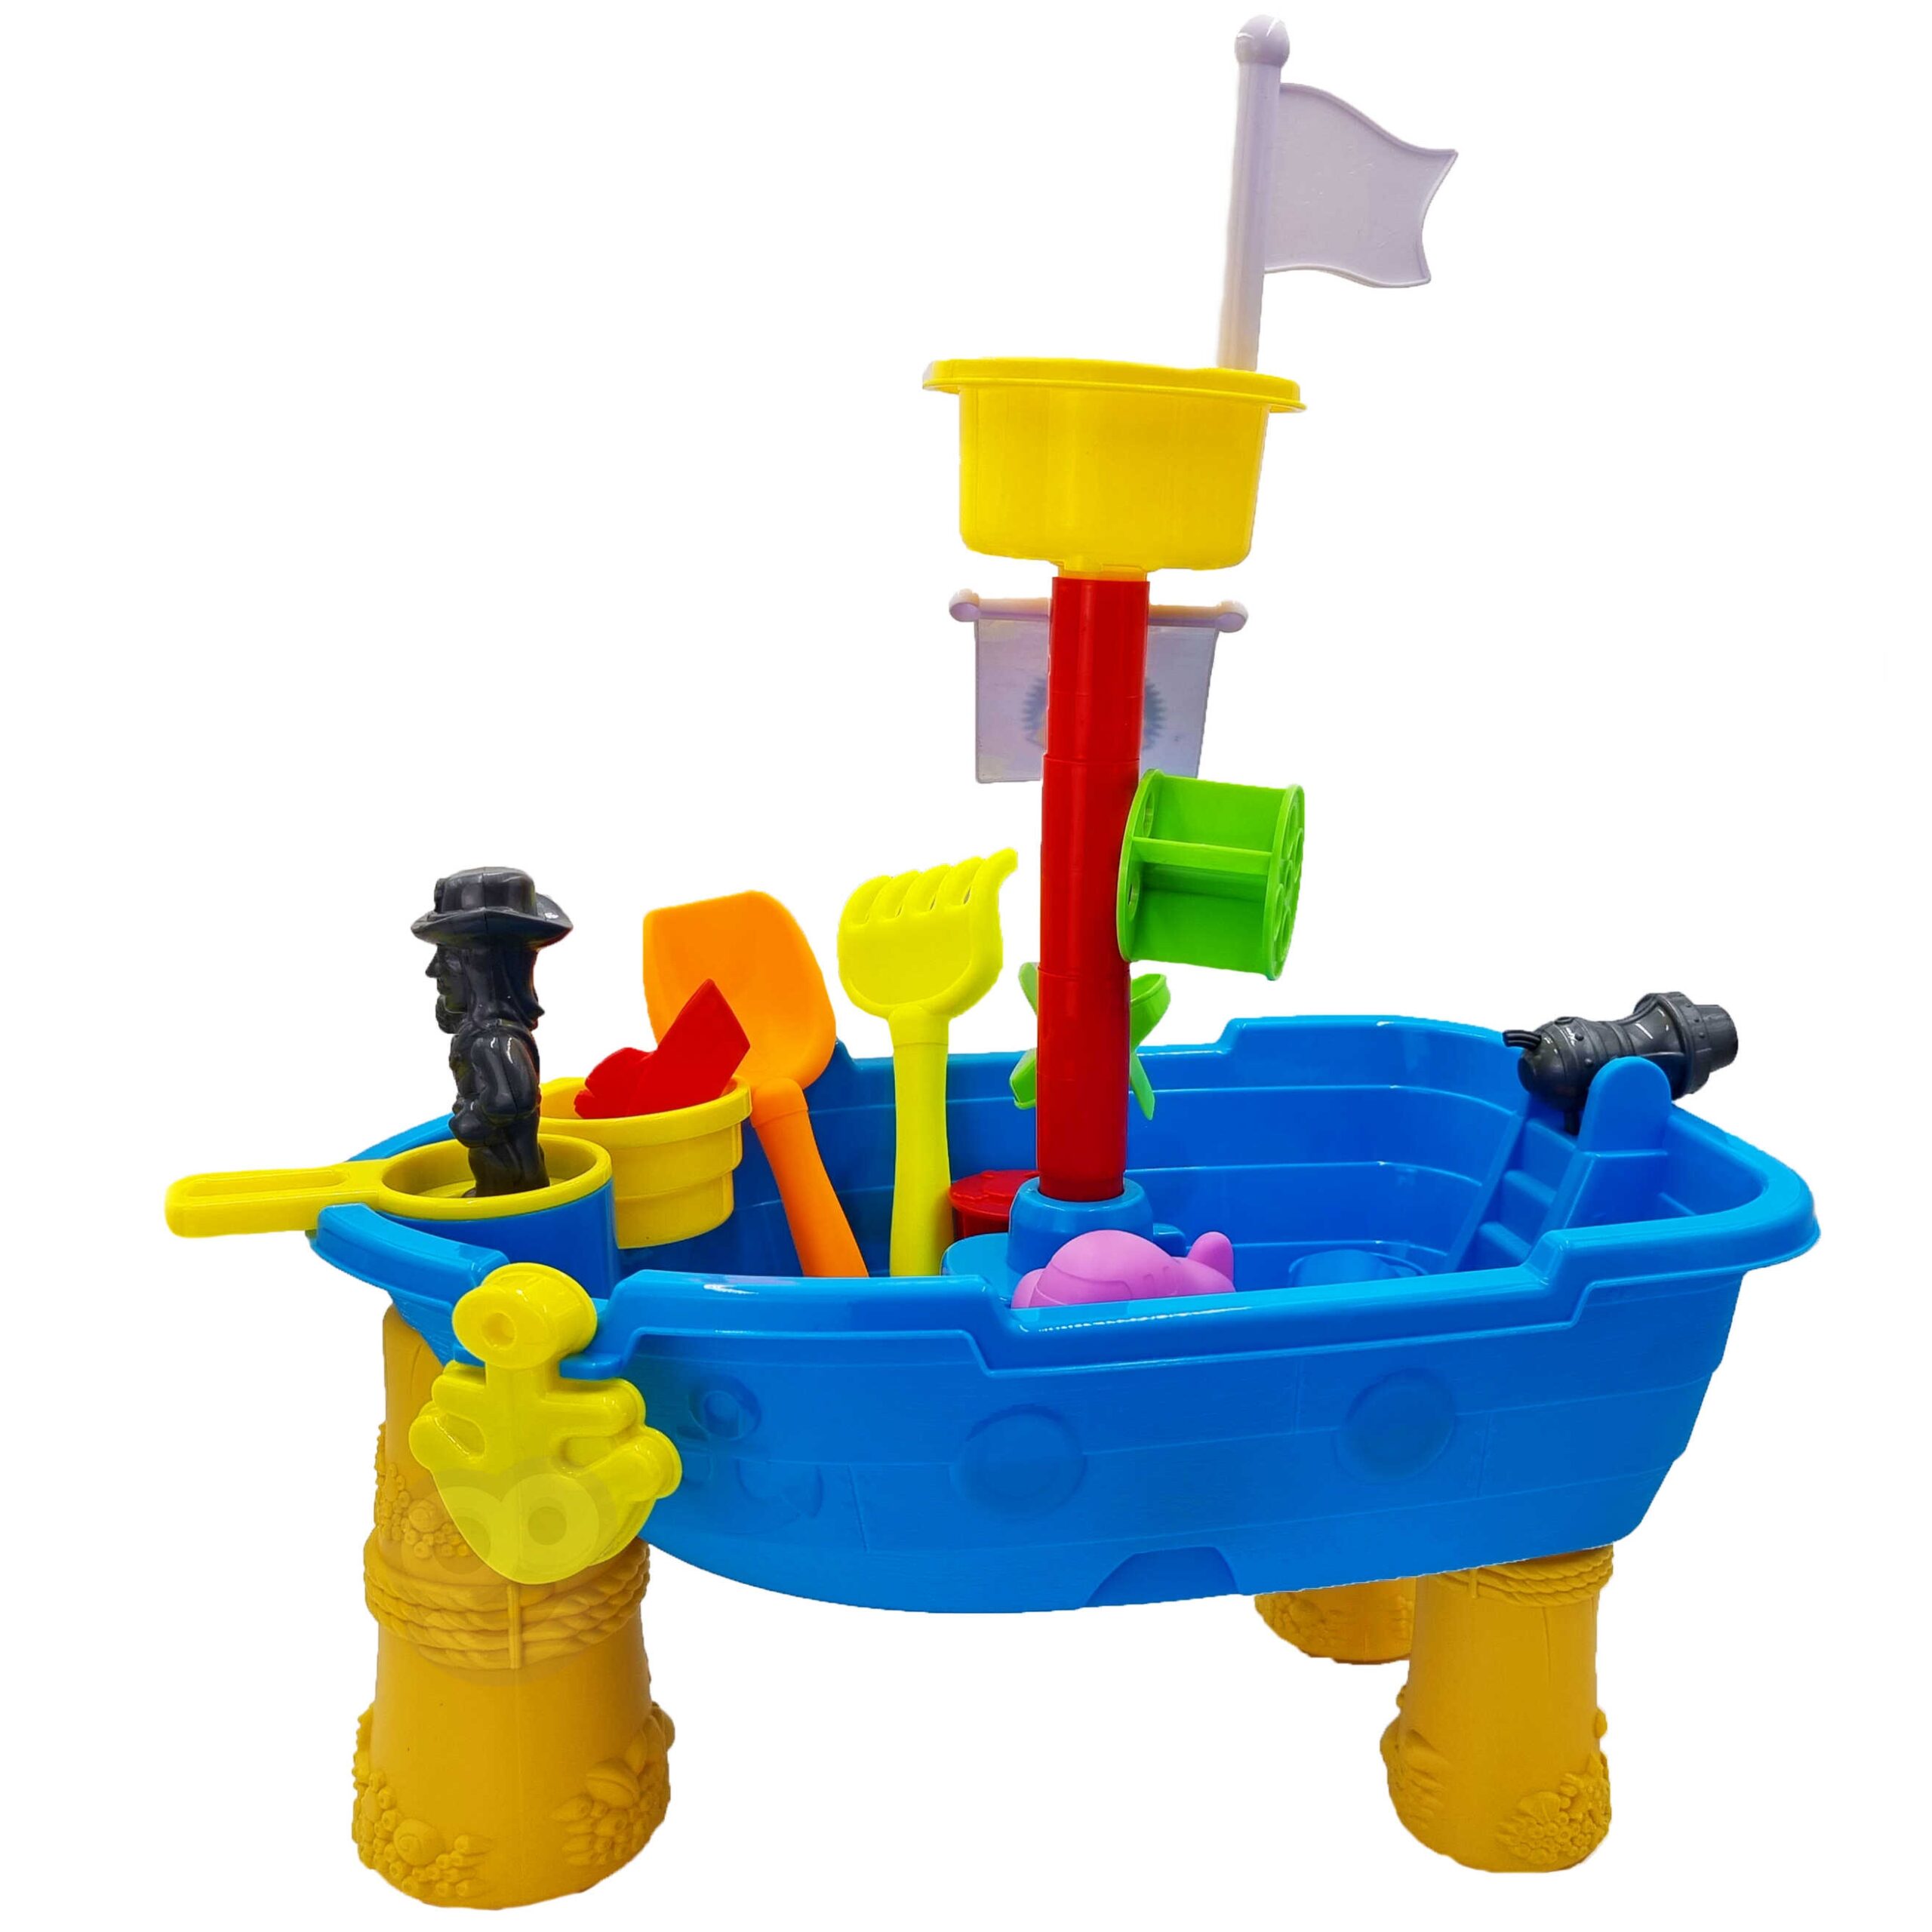 Stolik wodny statek piracki + akc., zabawka dla dzieci, Woopie